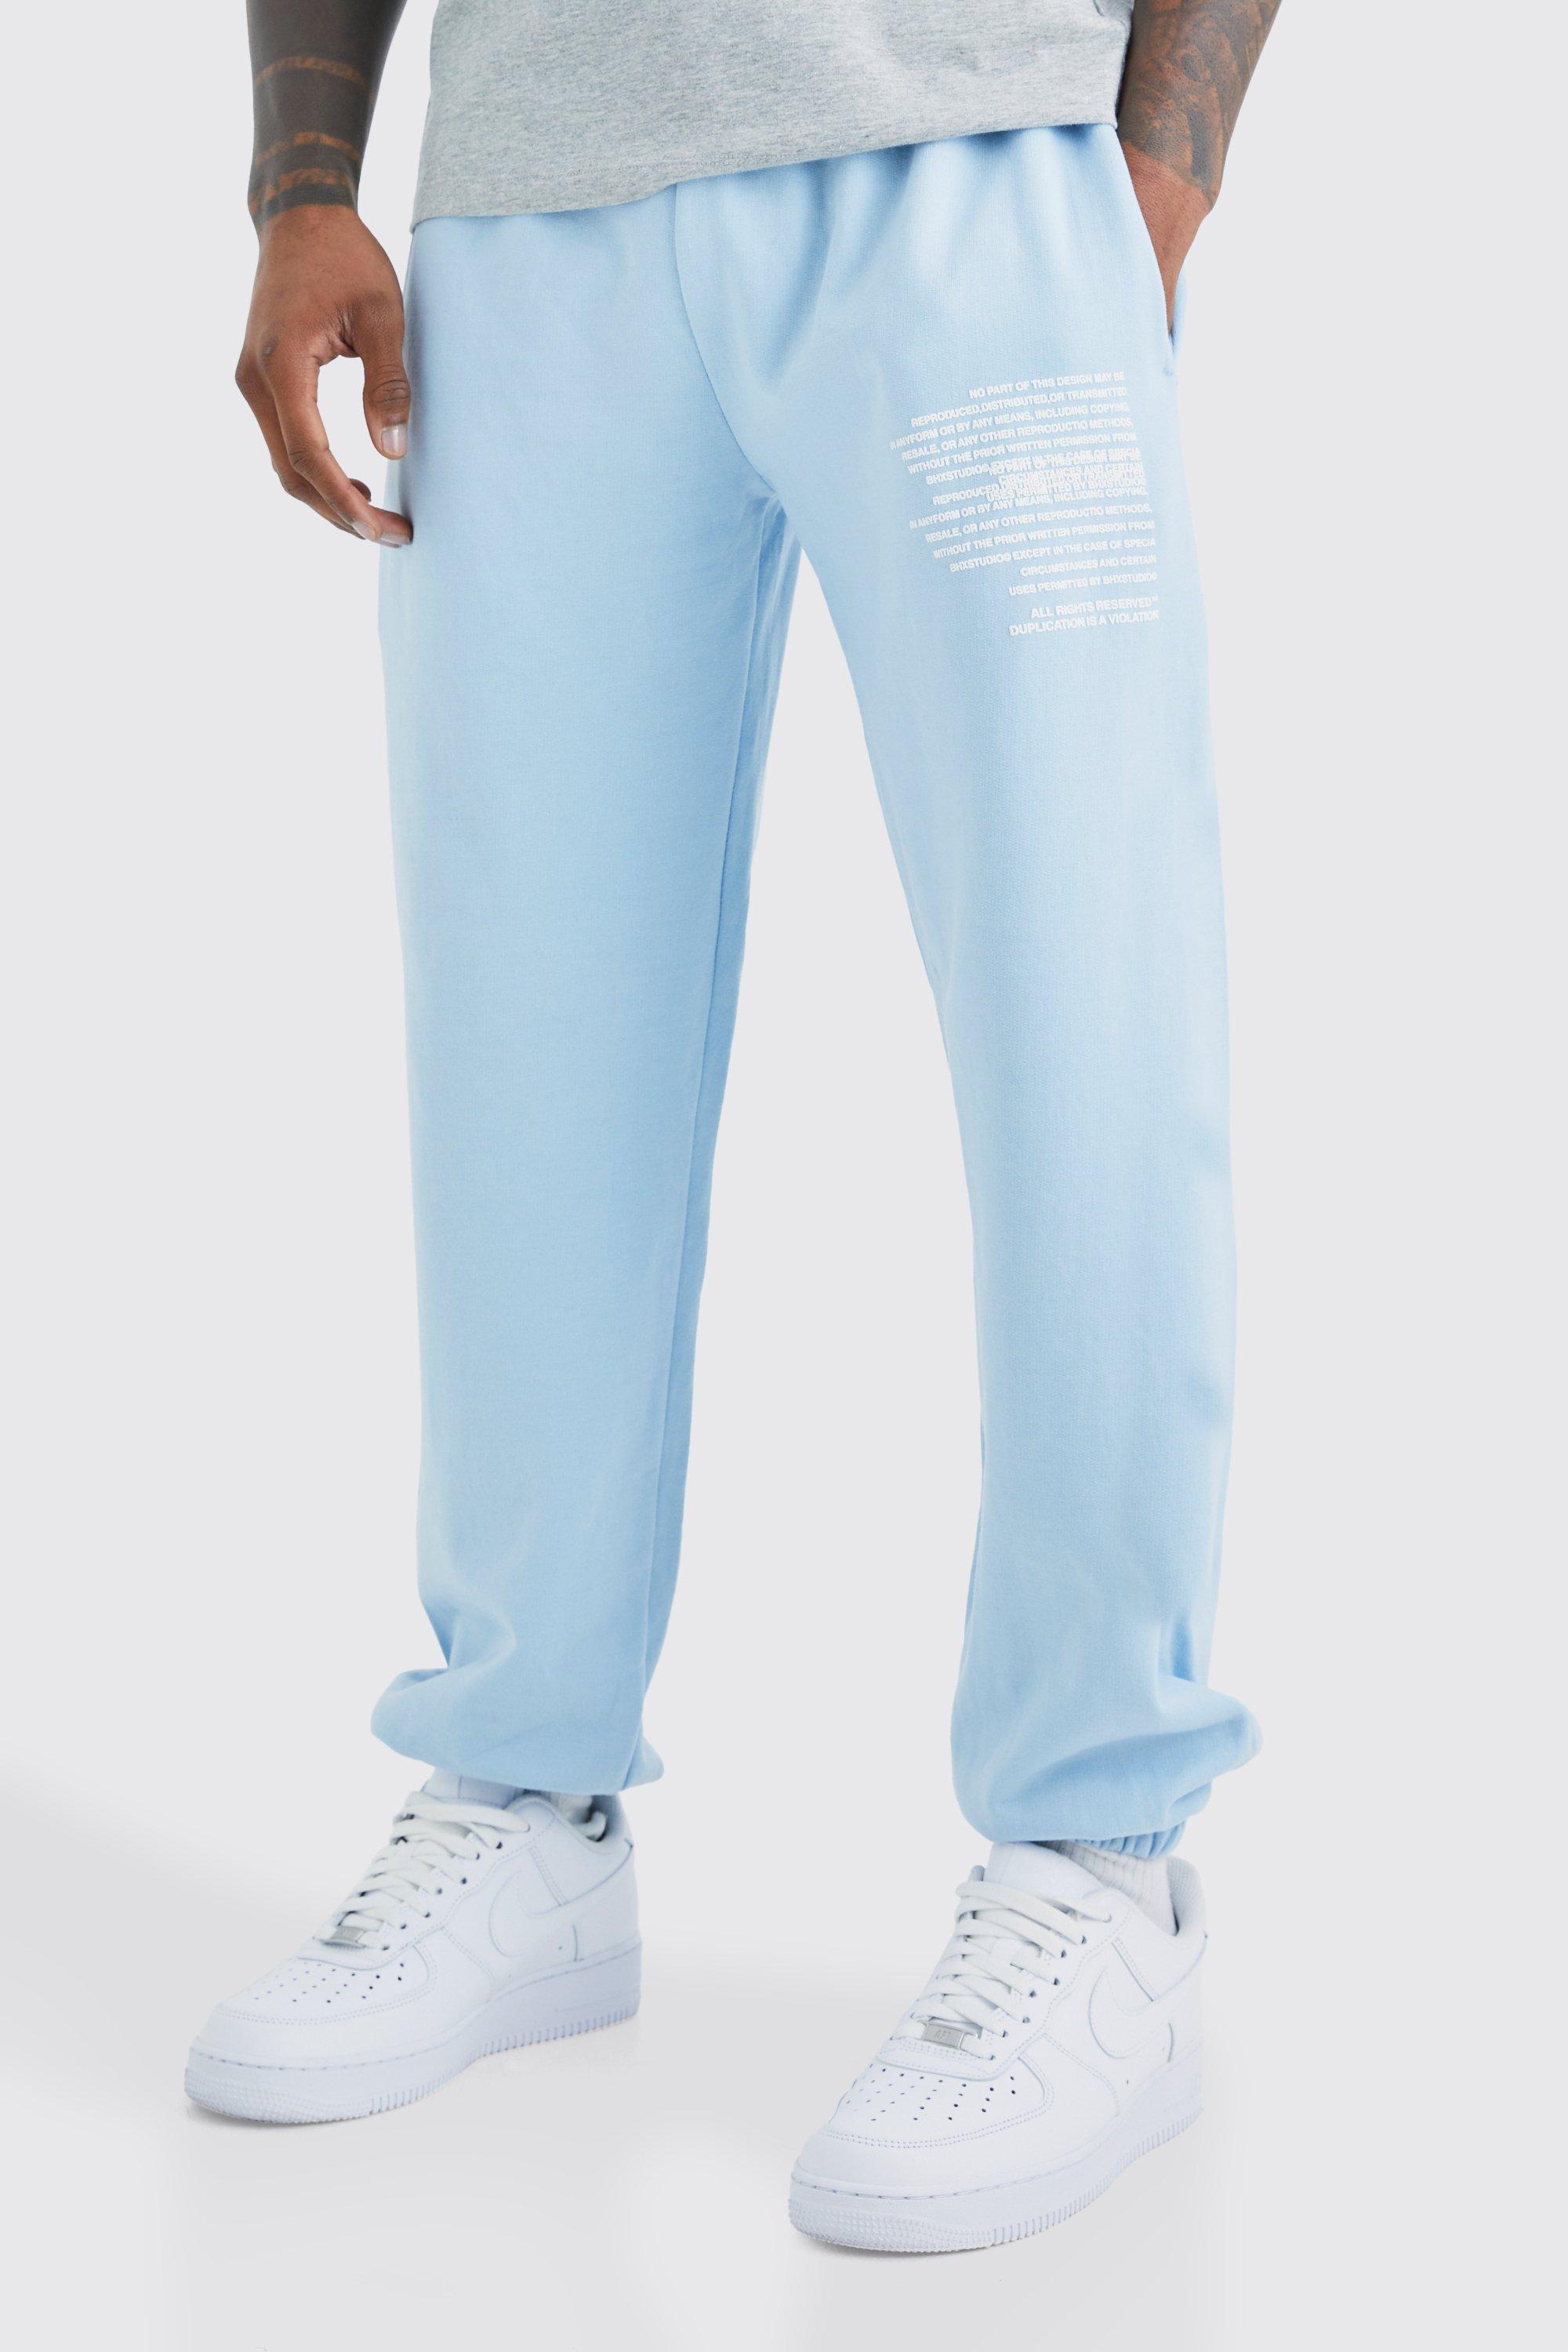 Image of Pantaloni tuta con grafica di testo, Azzurro